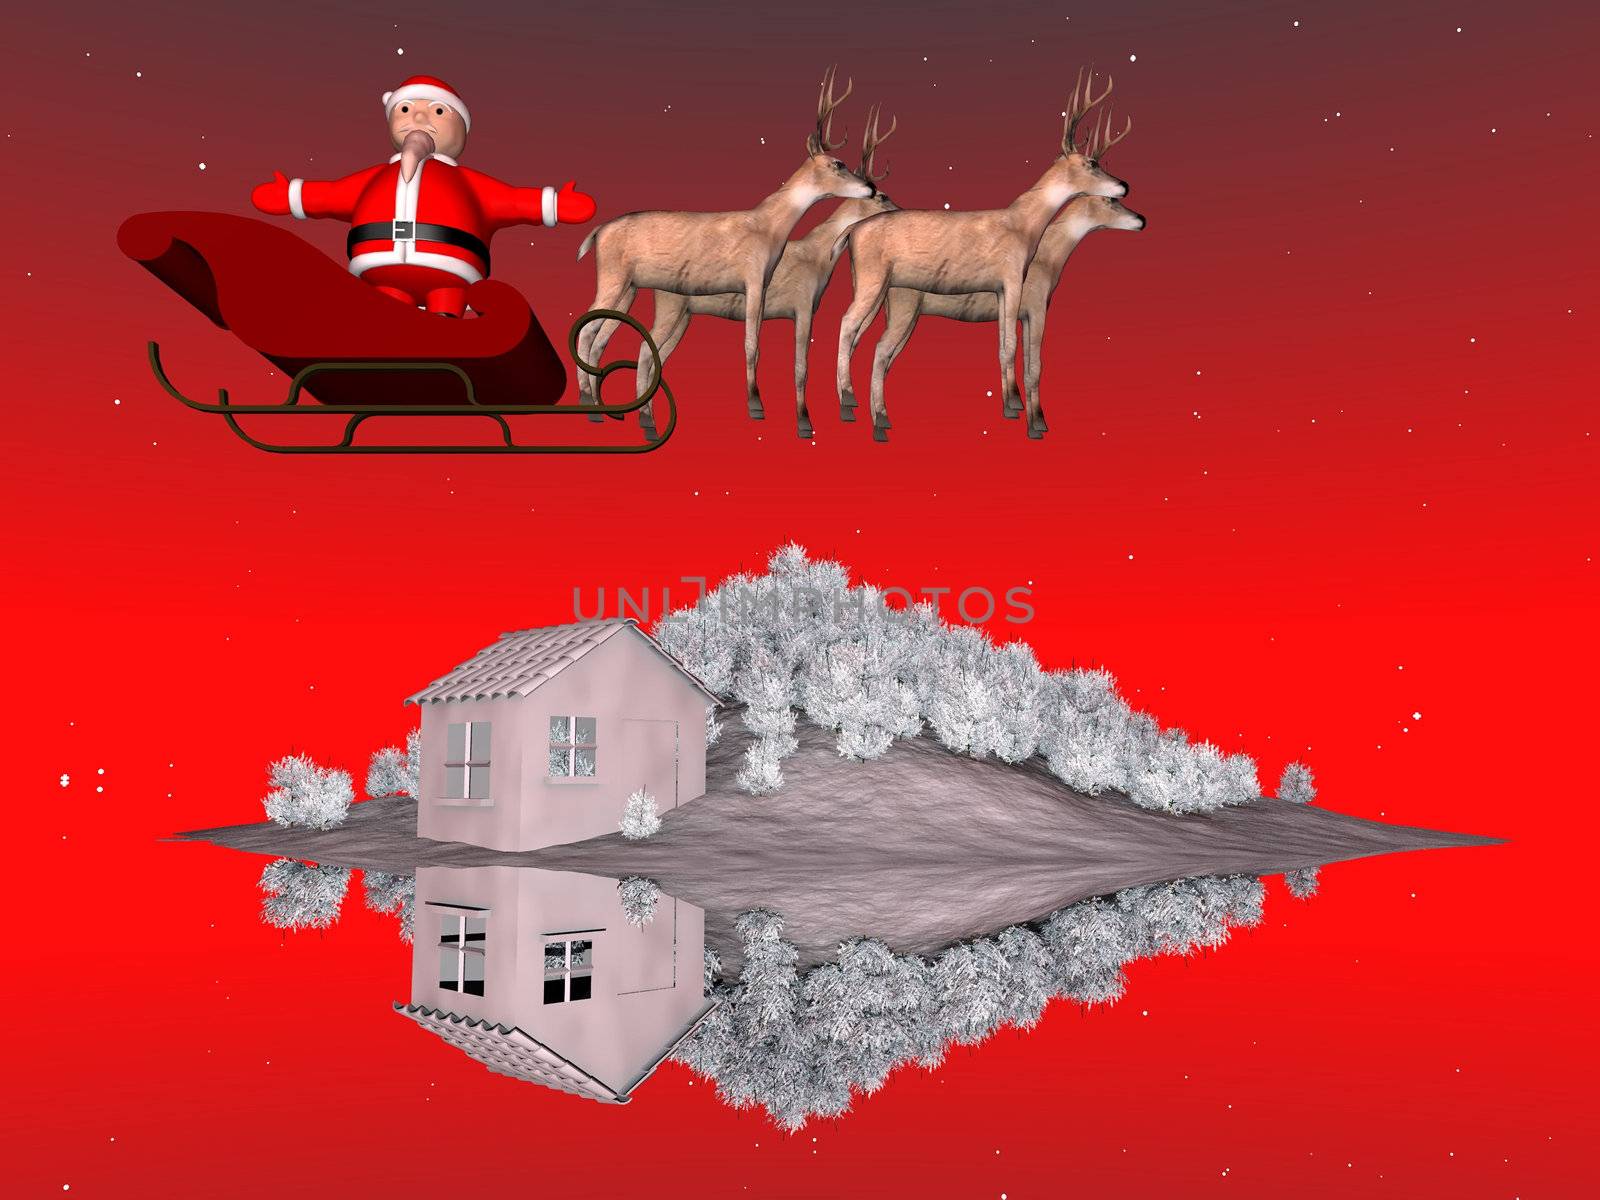 Santa Claus on his sleigh